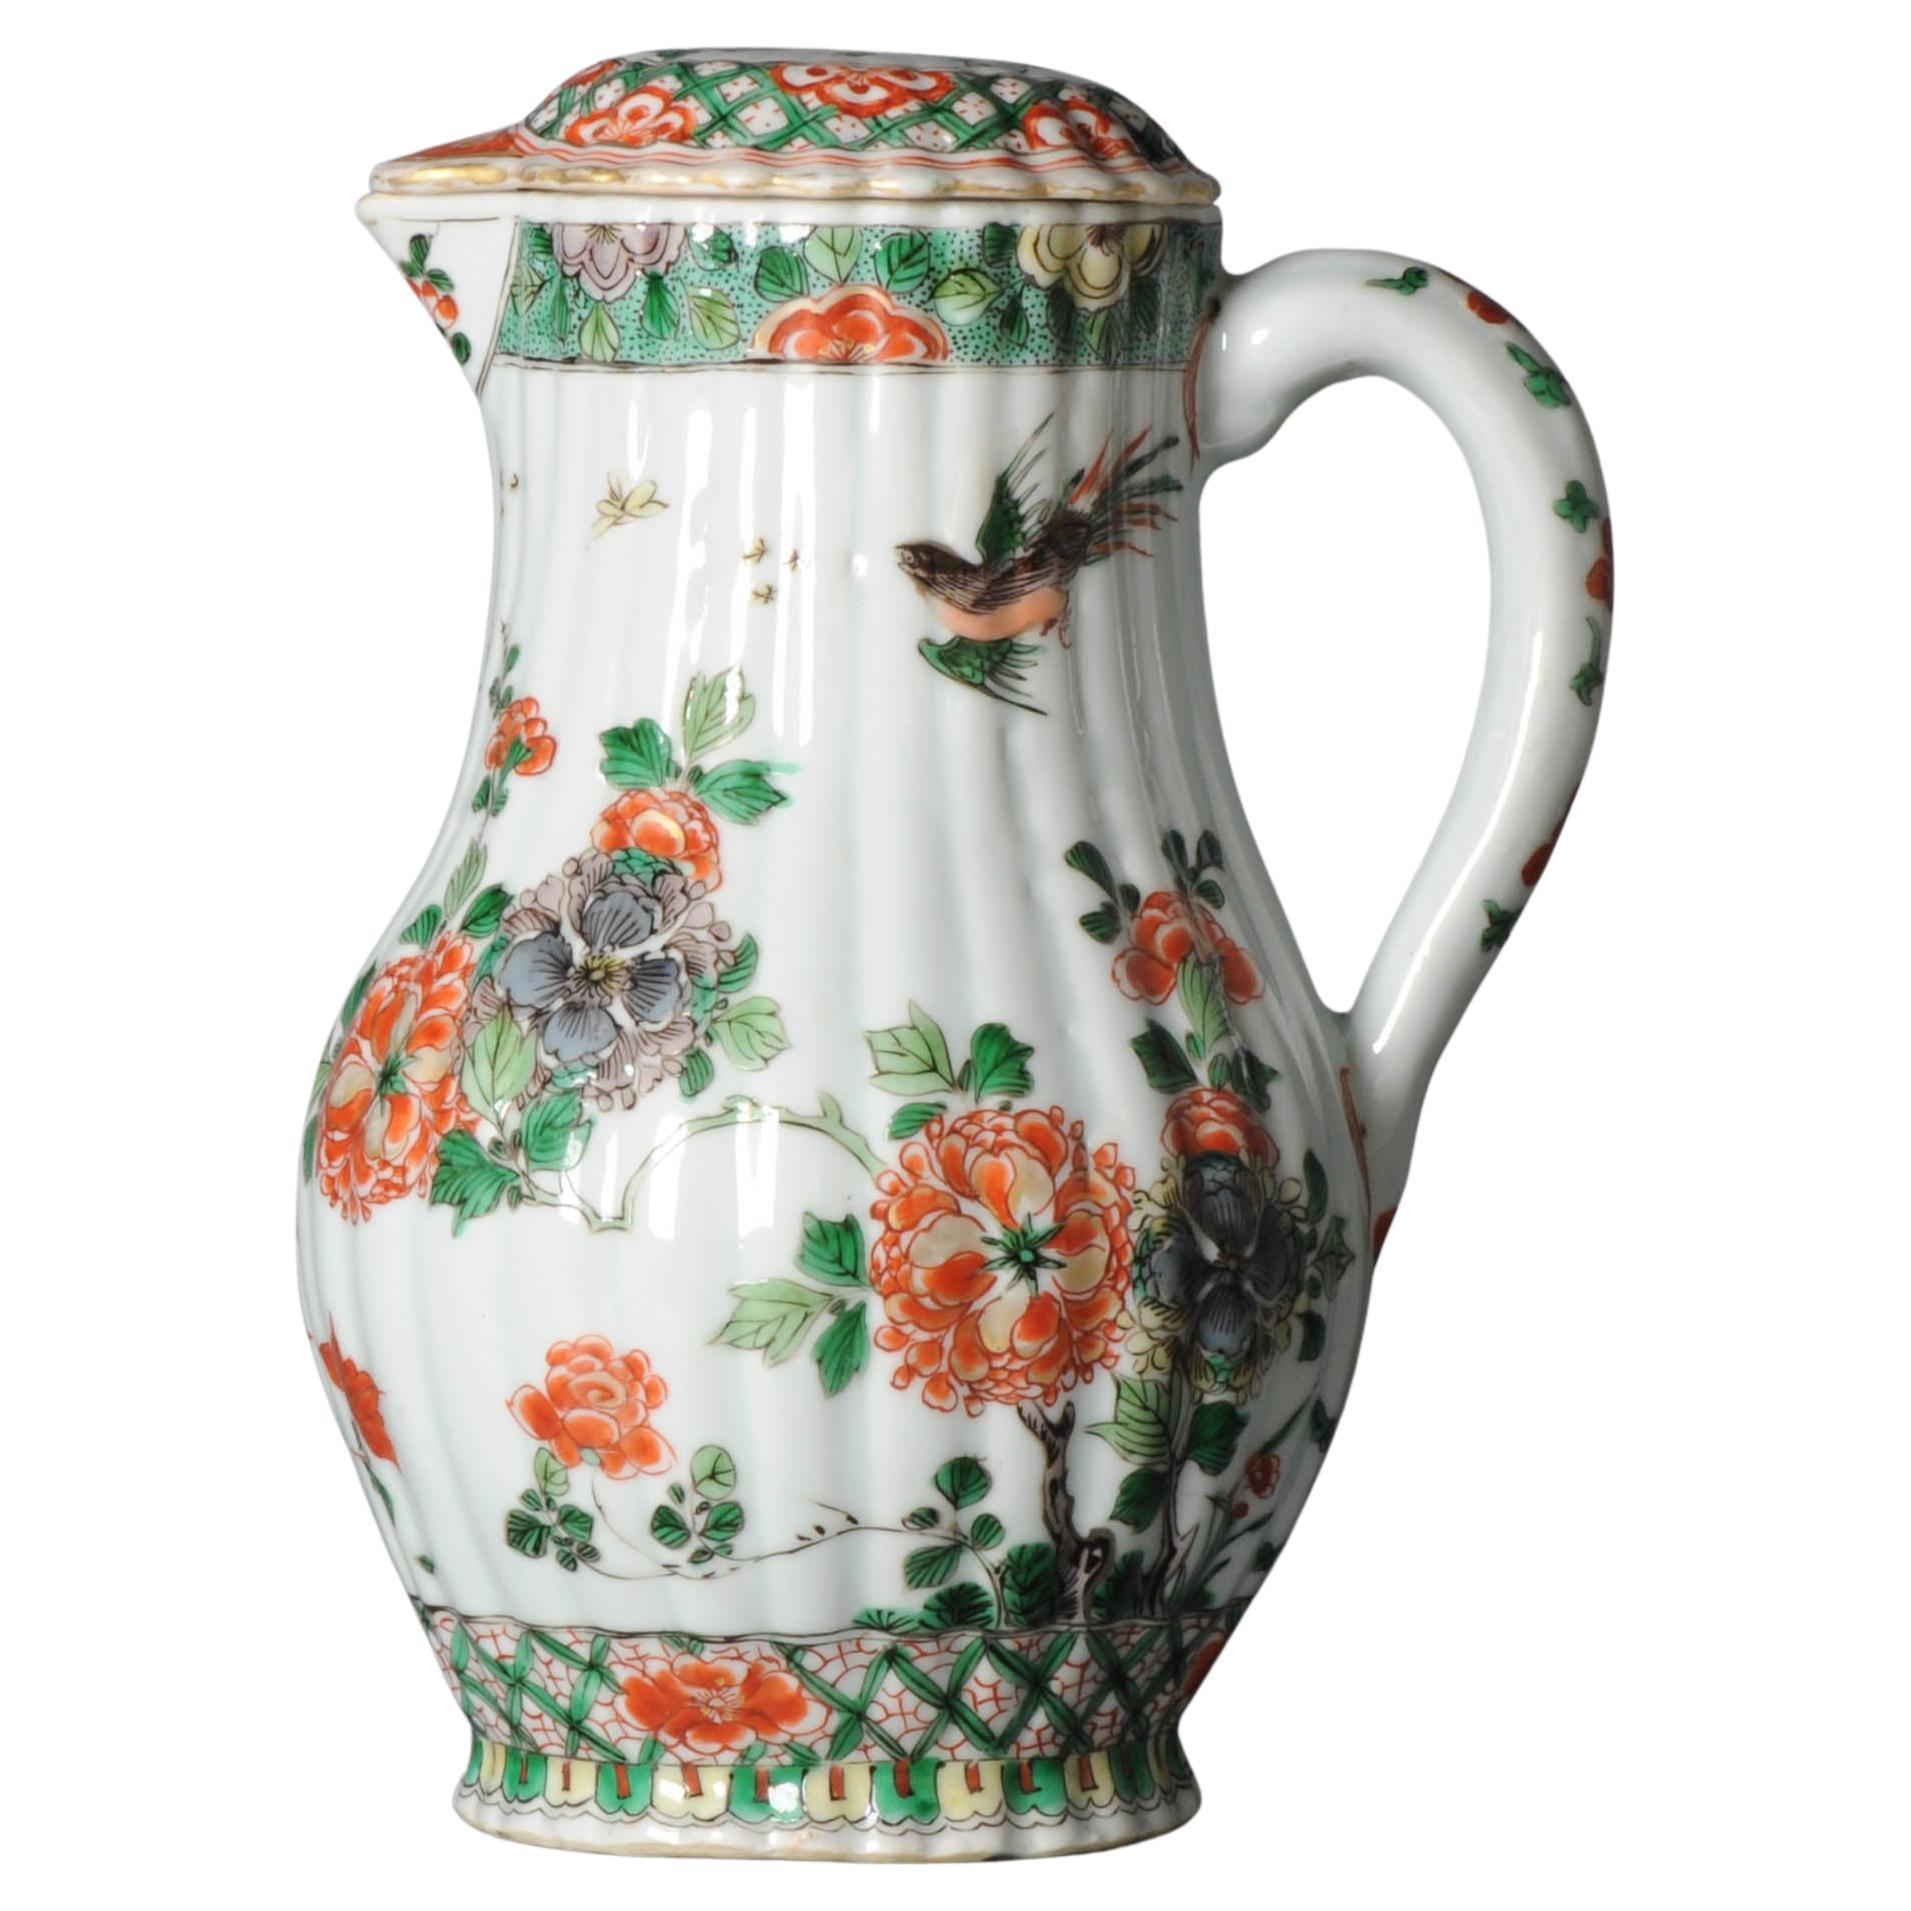 Antique Large Kangxi '1662-1722' 18C Chinese Porcelain Imari Verte Jug For Sale